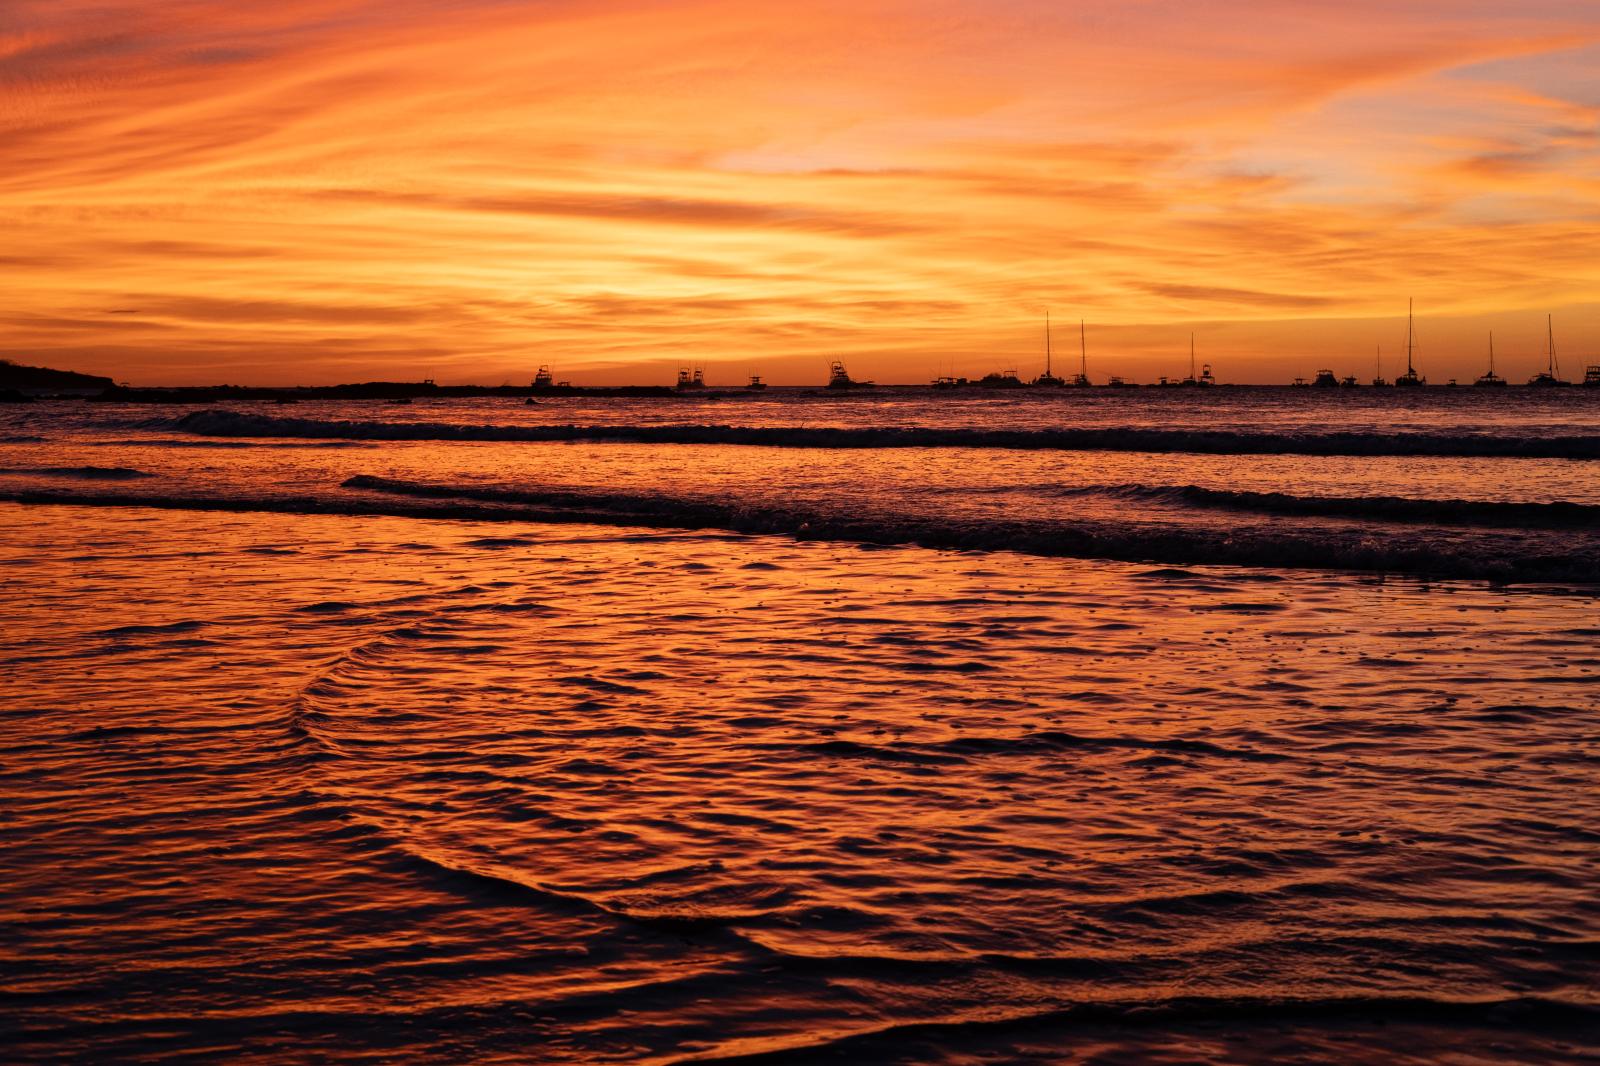 Tamarindo Sunset | Buy this image